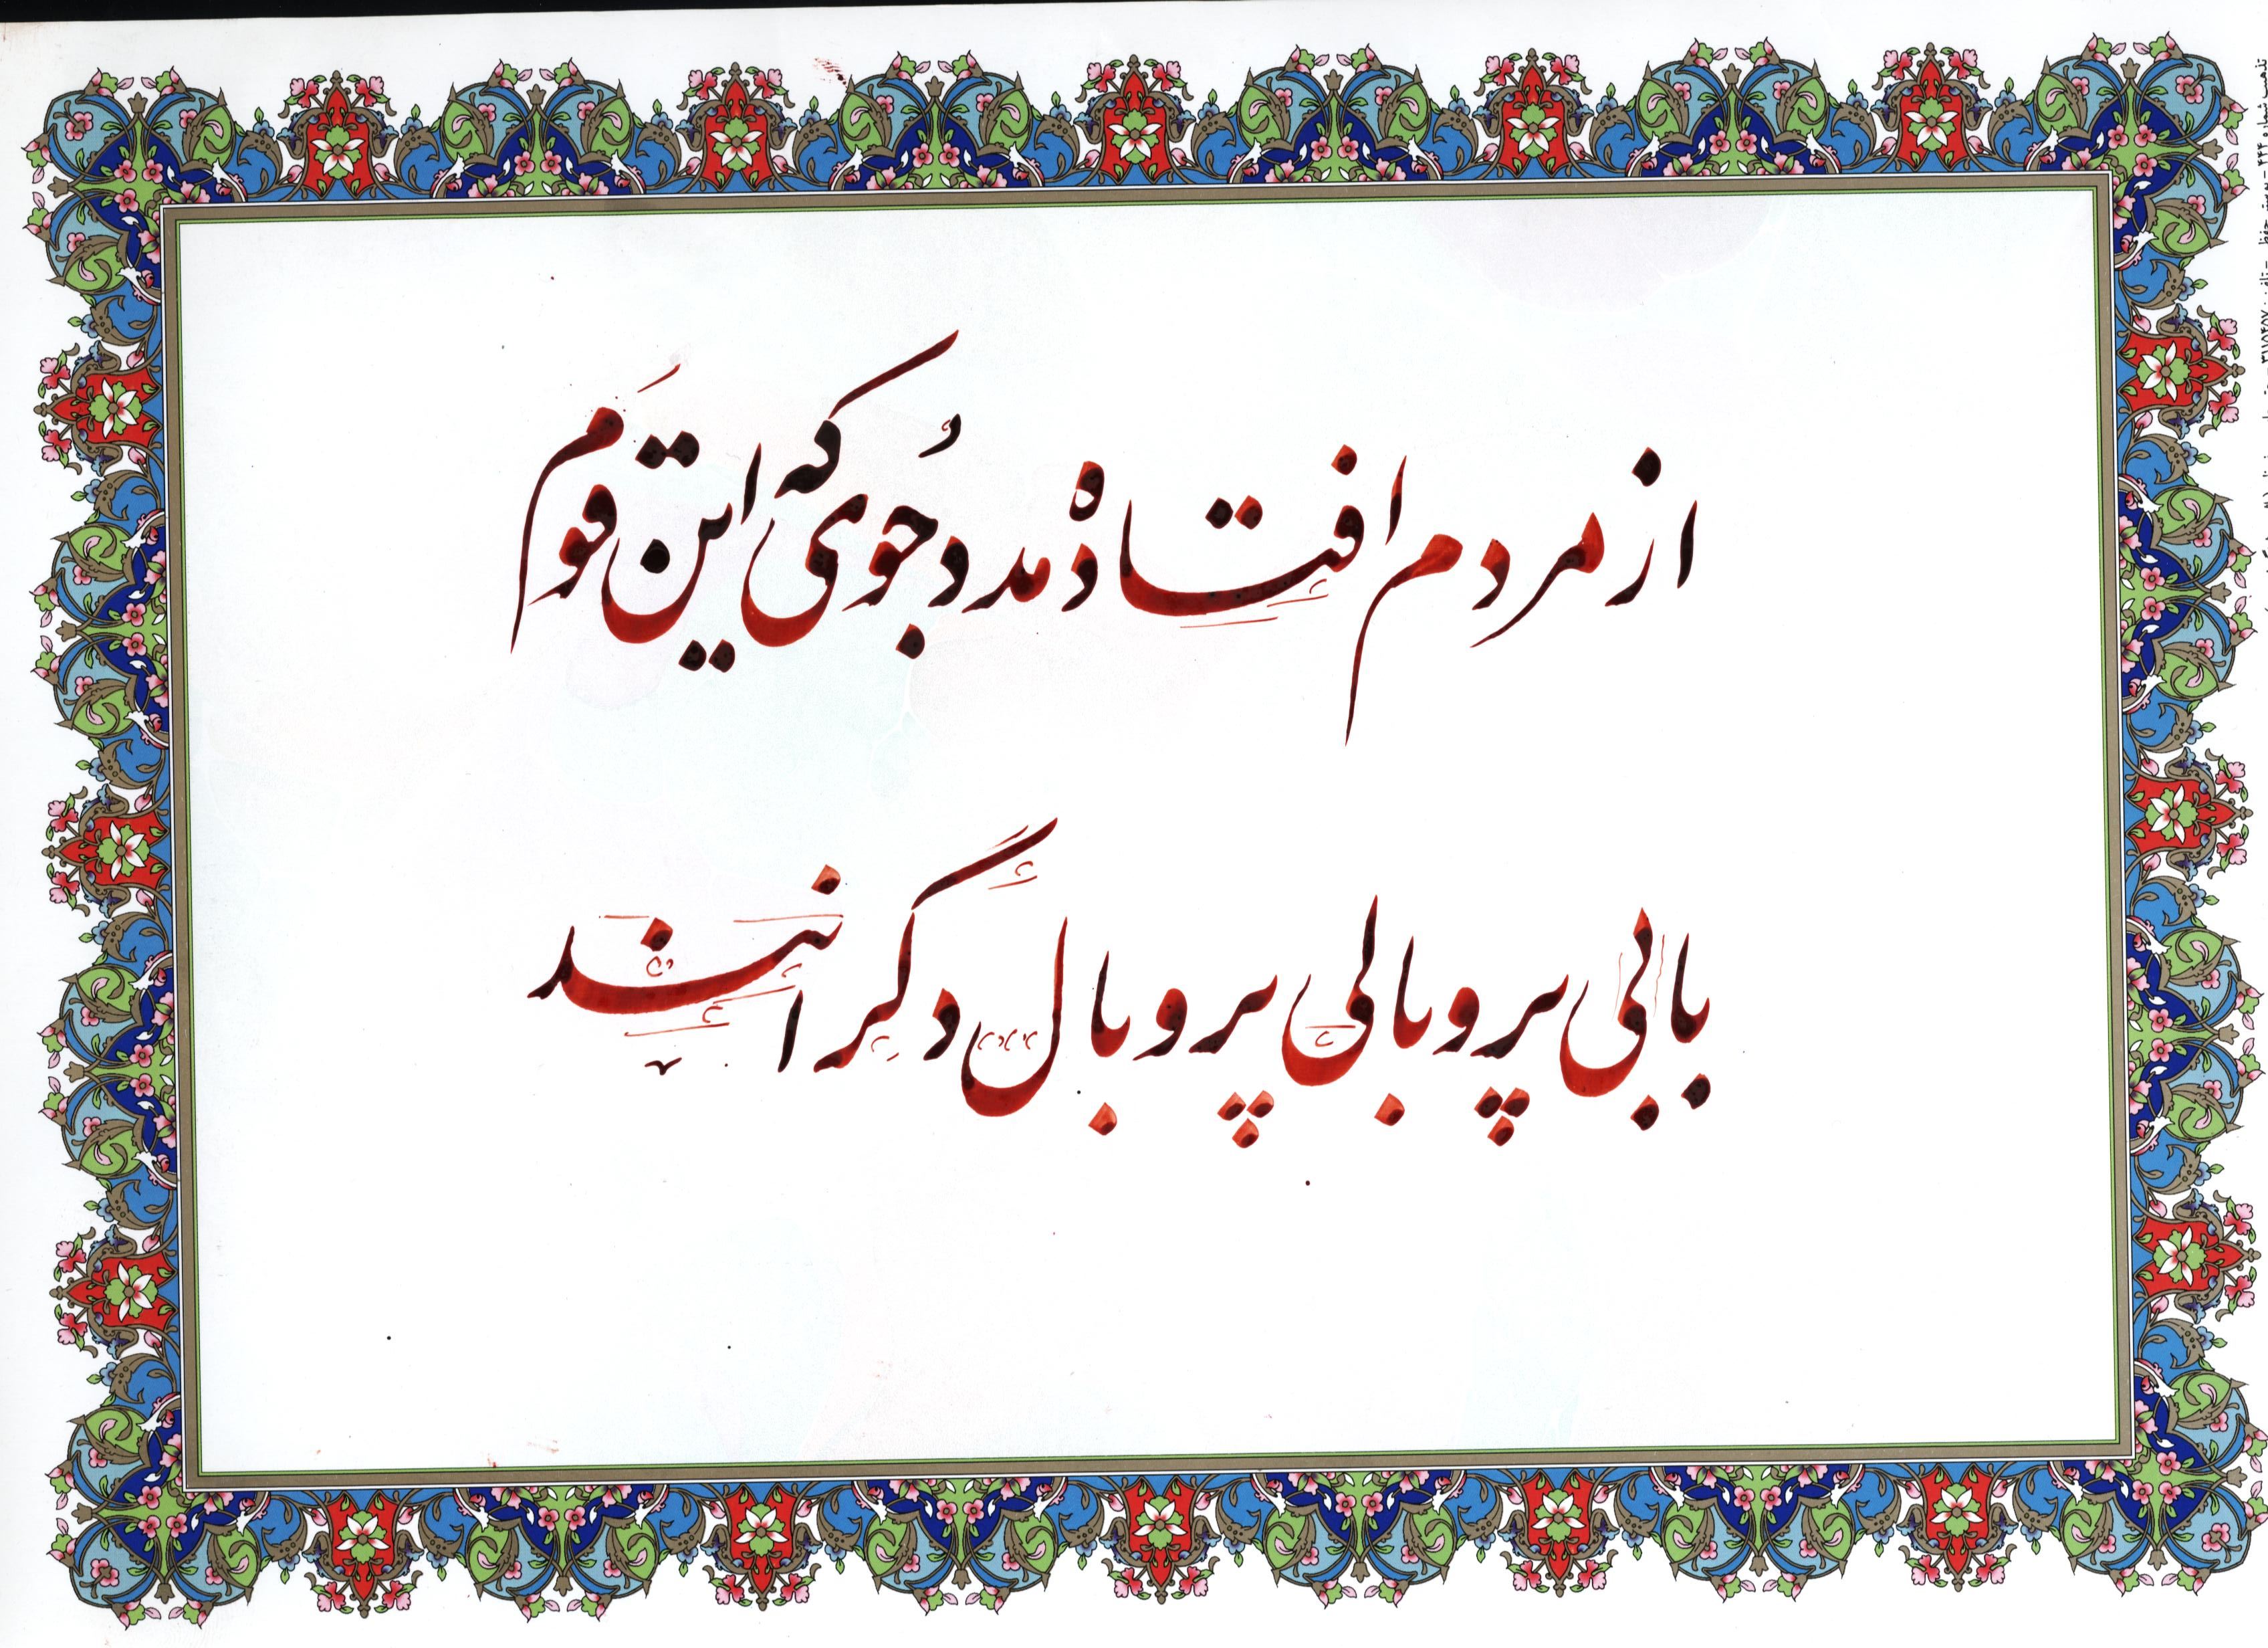 خوشنویسی شعر های مورد استفاده قرار گرفته توسط آیت الله سید حسن عاملی